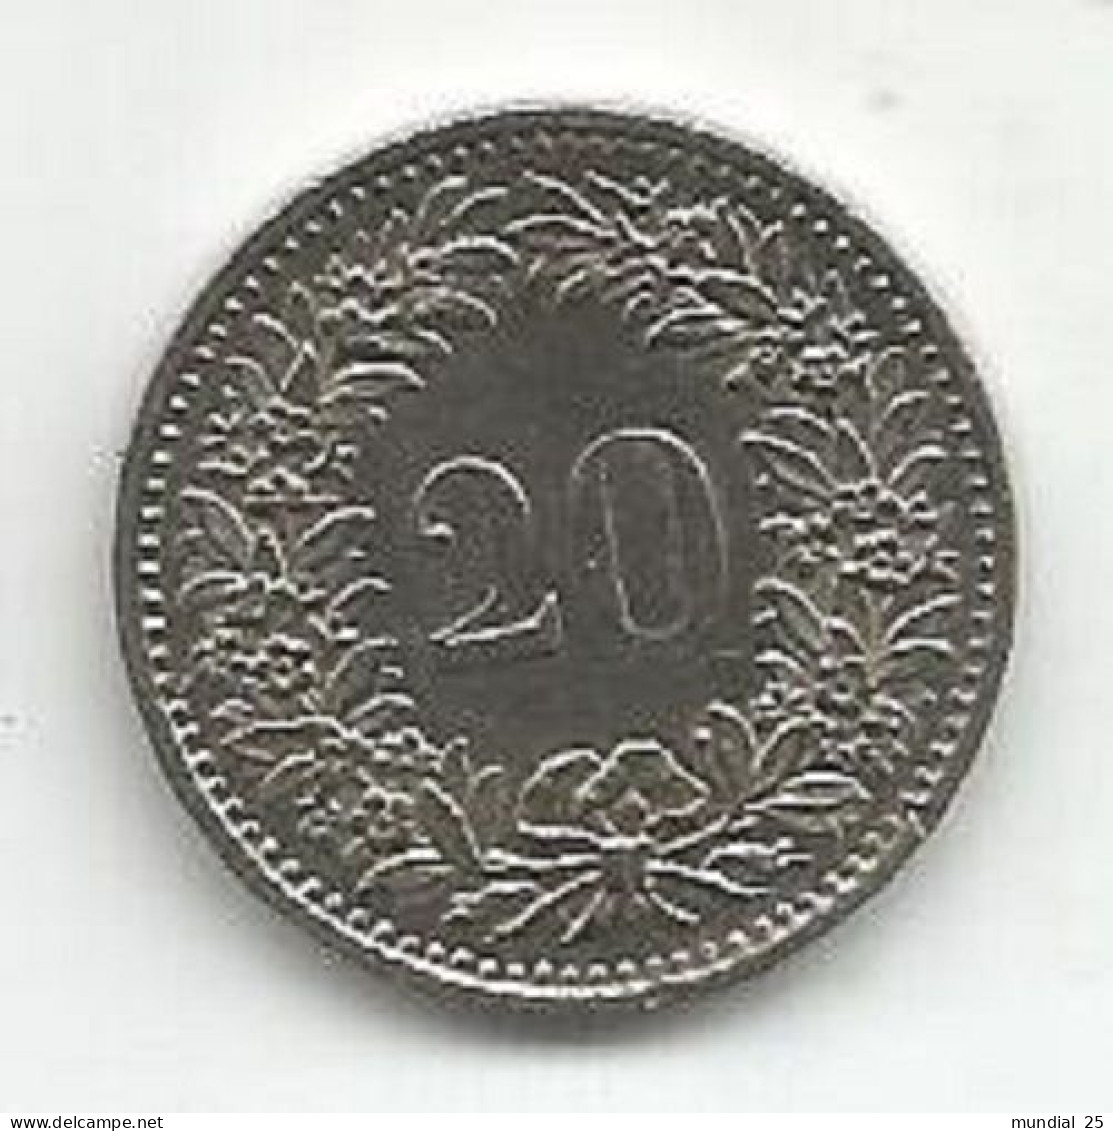 SWITZERLAND 20 RAPPEN 1980 - 20 Centimes / Rappen